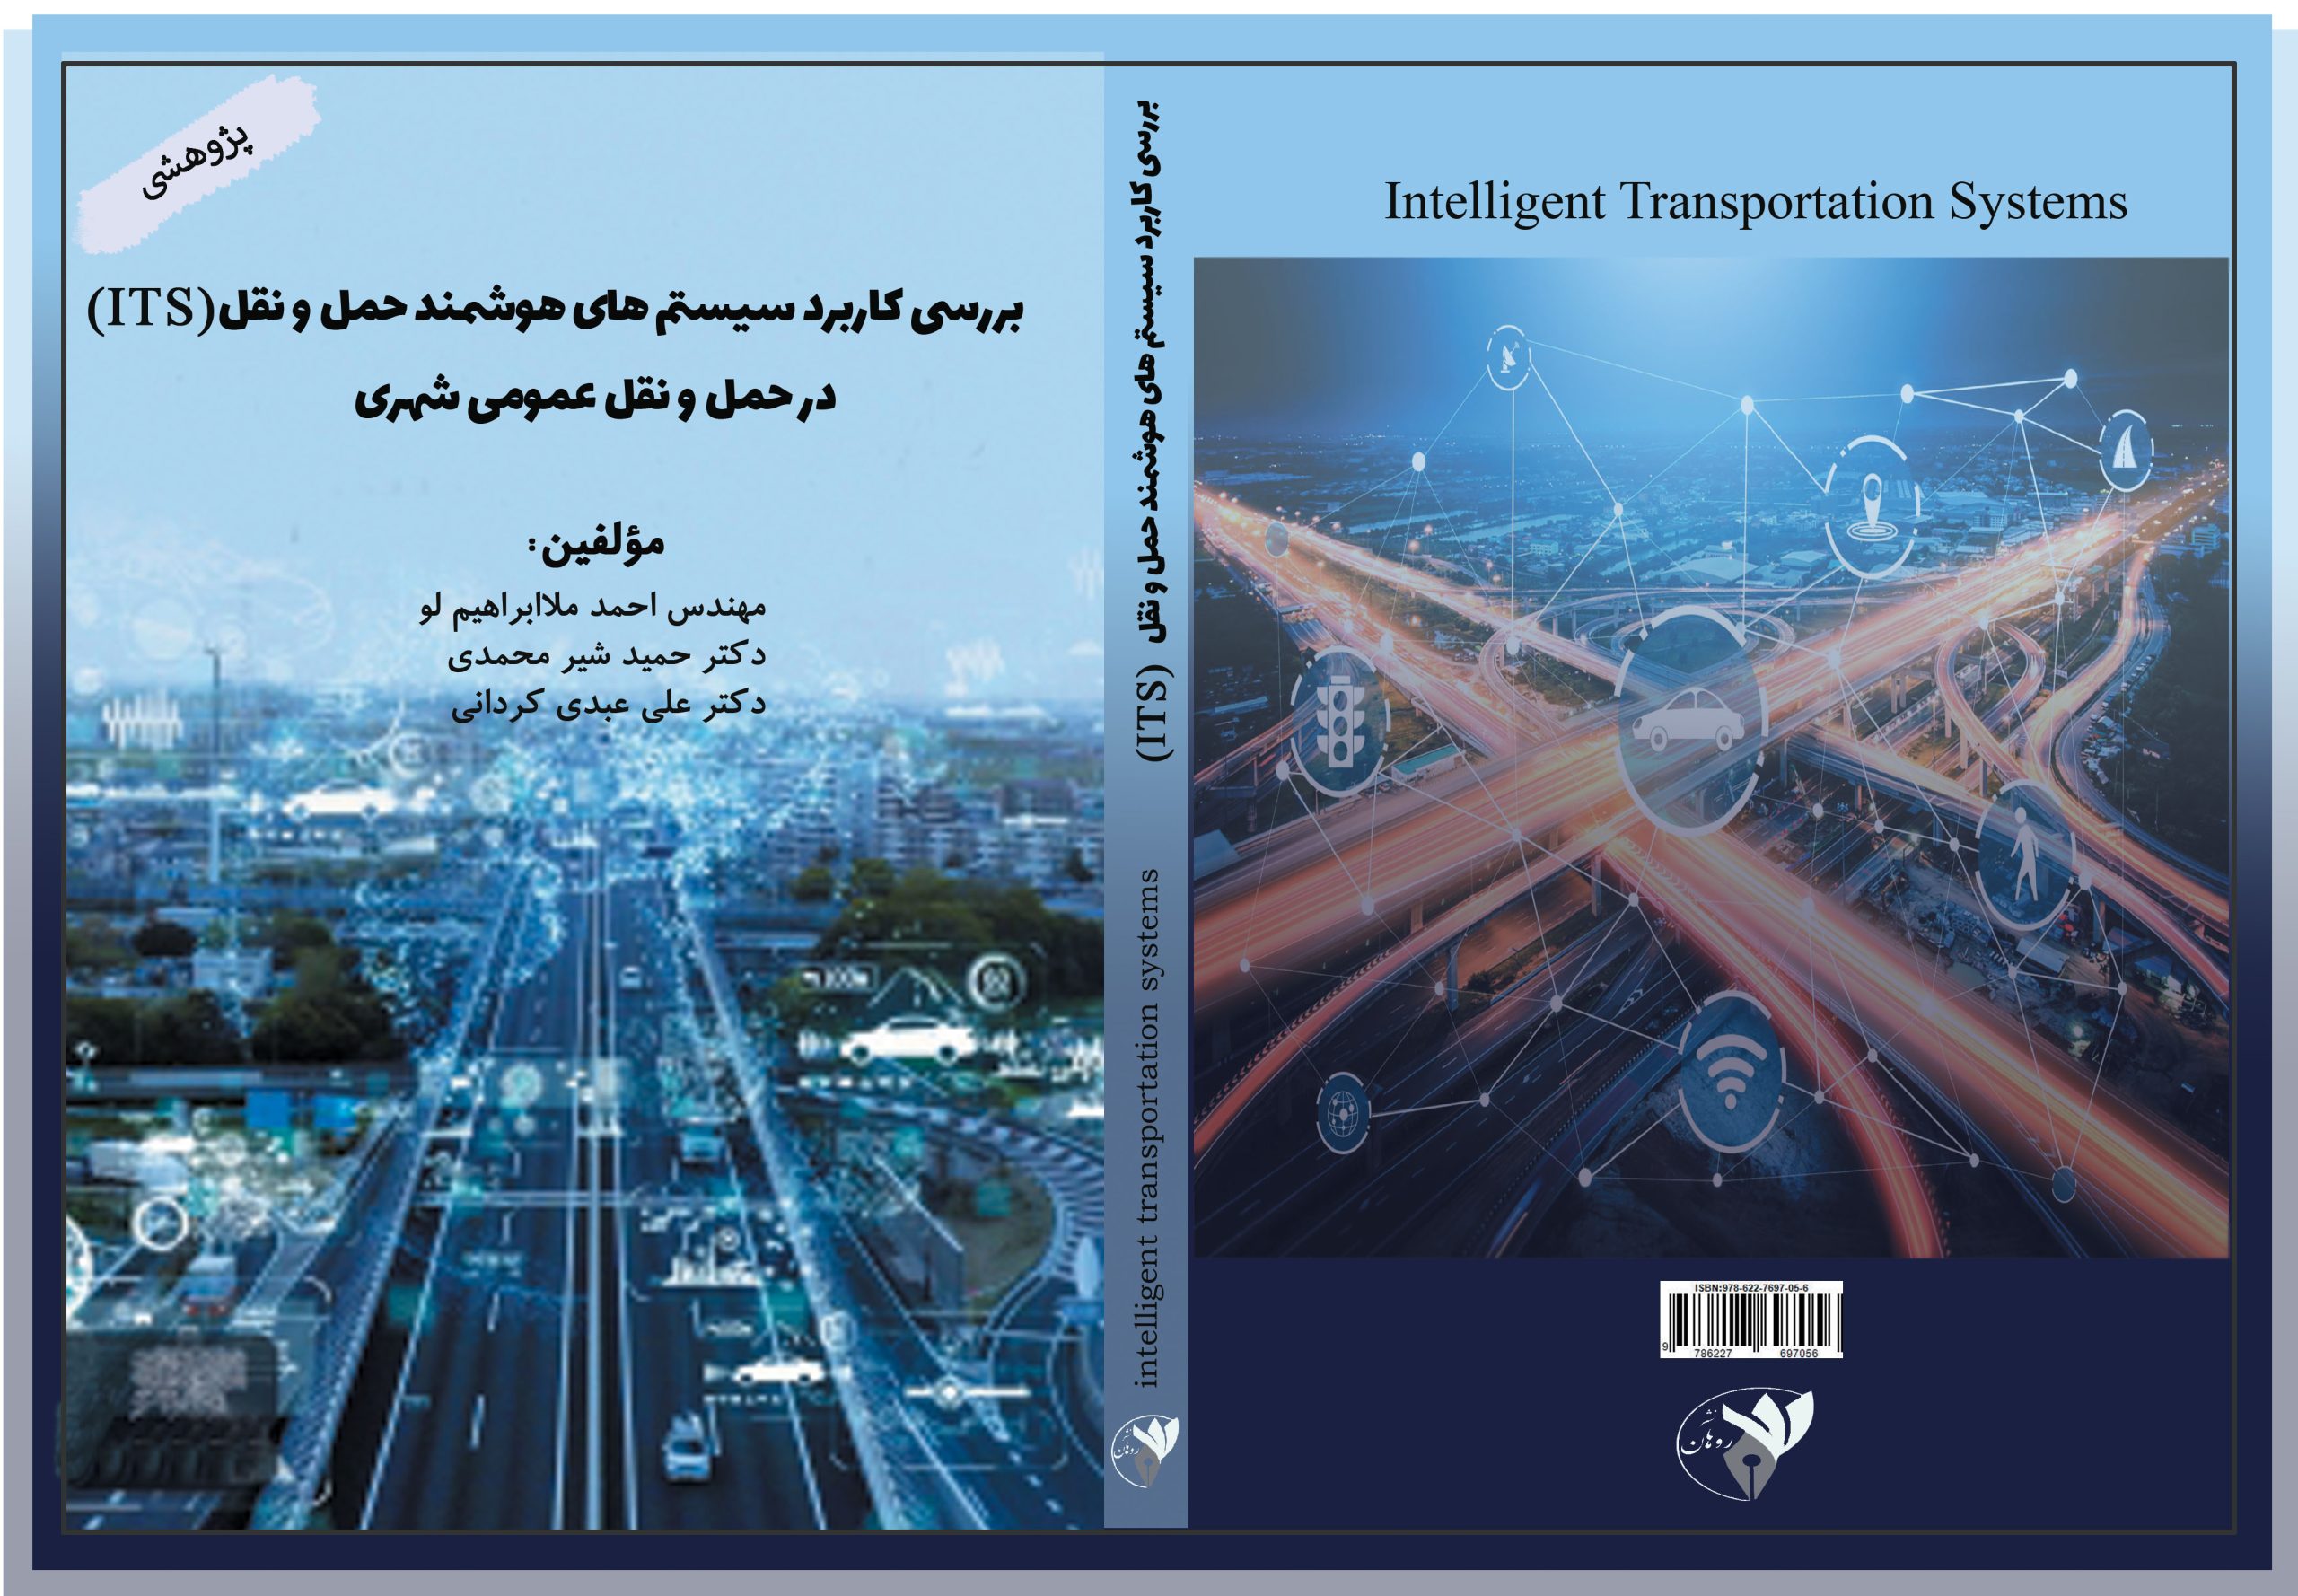 بررسی کاربرد سیستم های هوشمند حمل ونقل (ITC) در حمل و نقل عمومی شهری